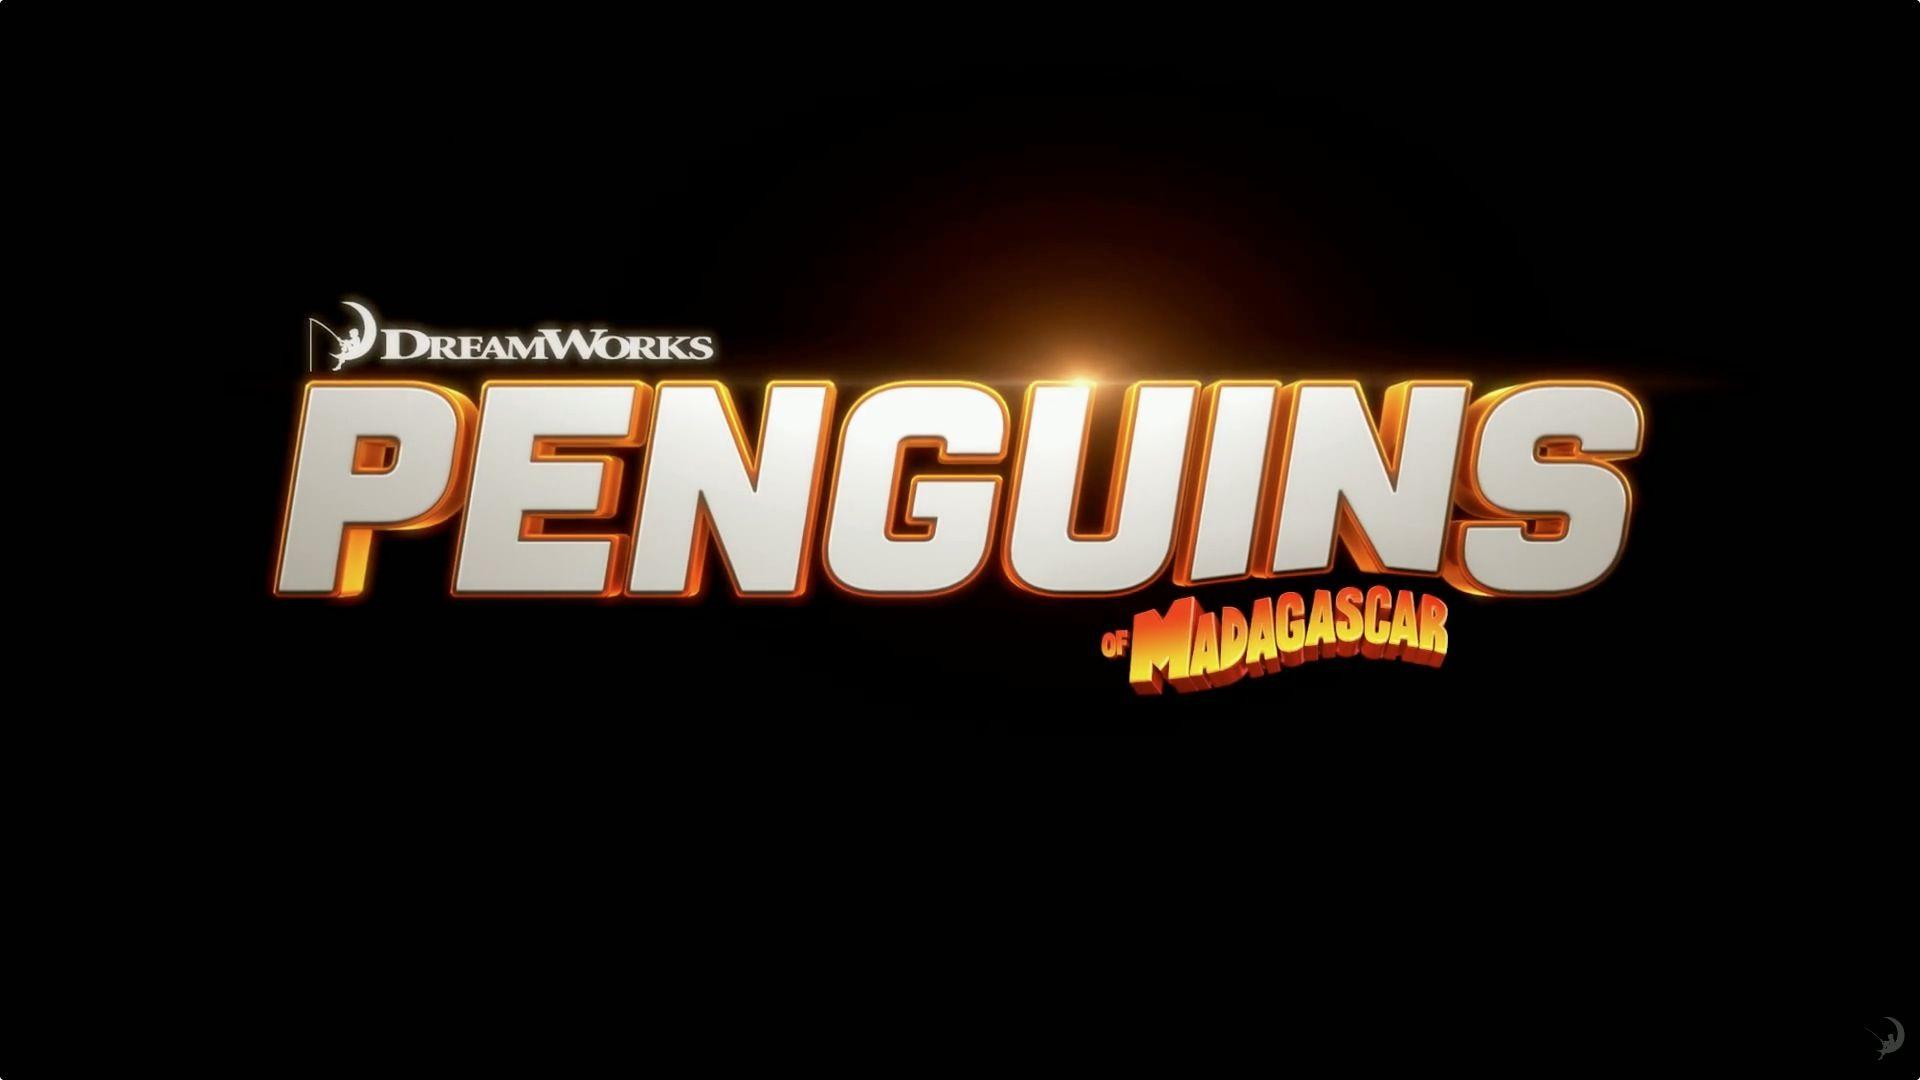 Madagascar Logo - Penguins of Madagascar Movie Logo Desktop Wallpaper